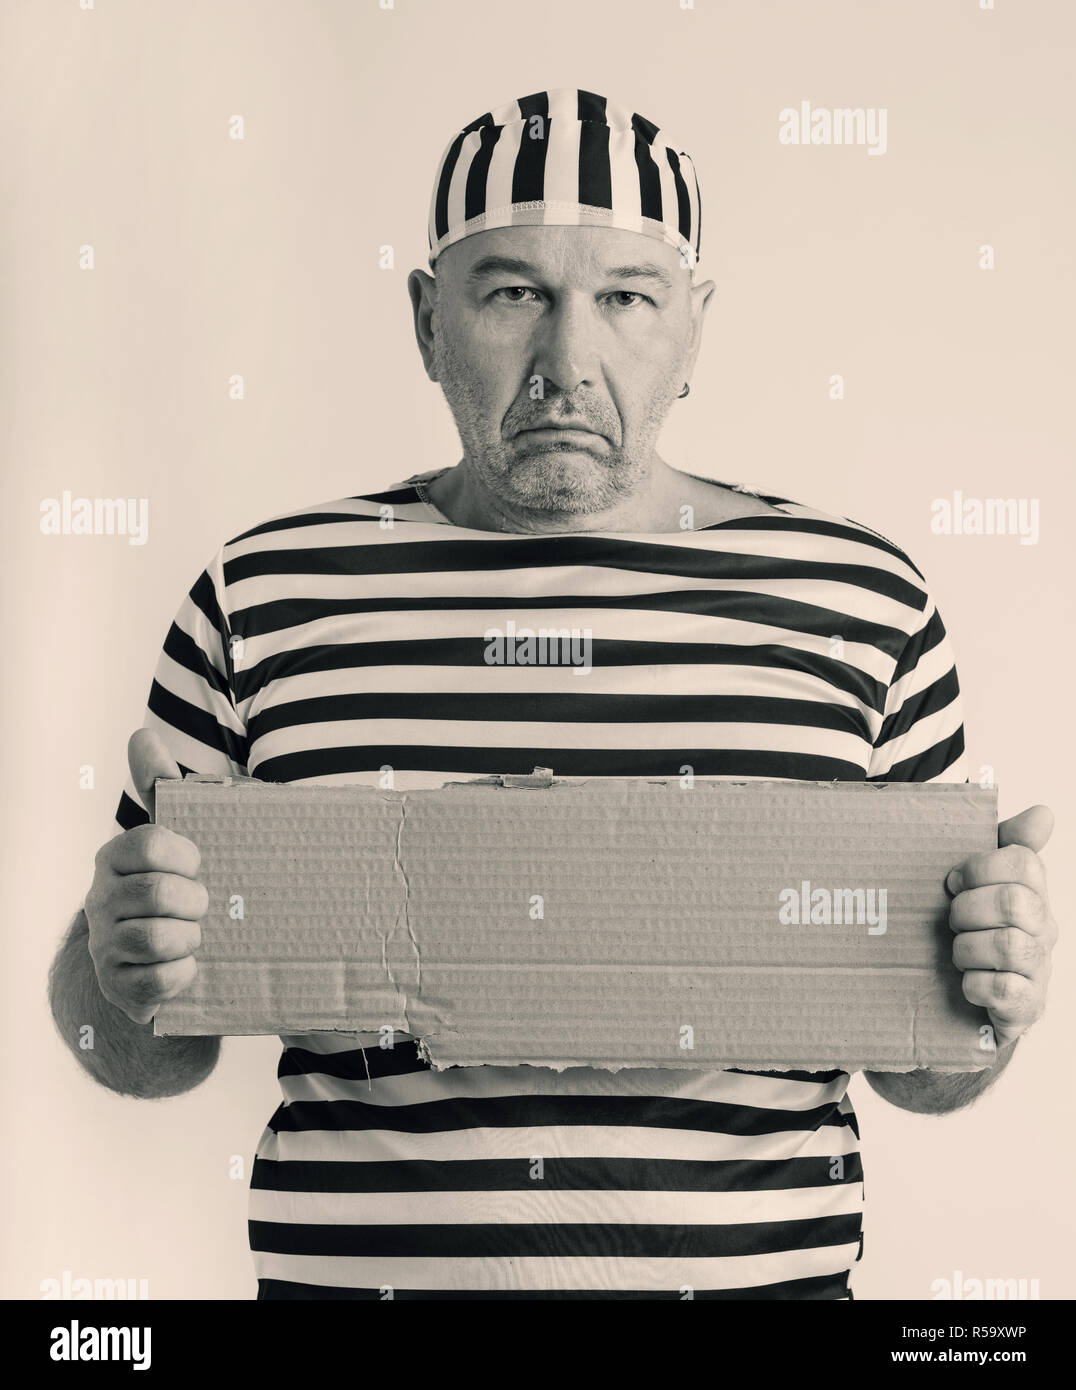 Retrato de un hombre preso en la cárcel disfrazada en estilo retro Foto de stock